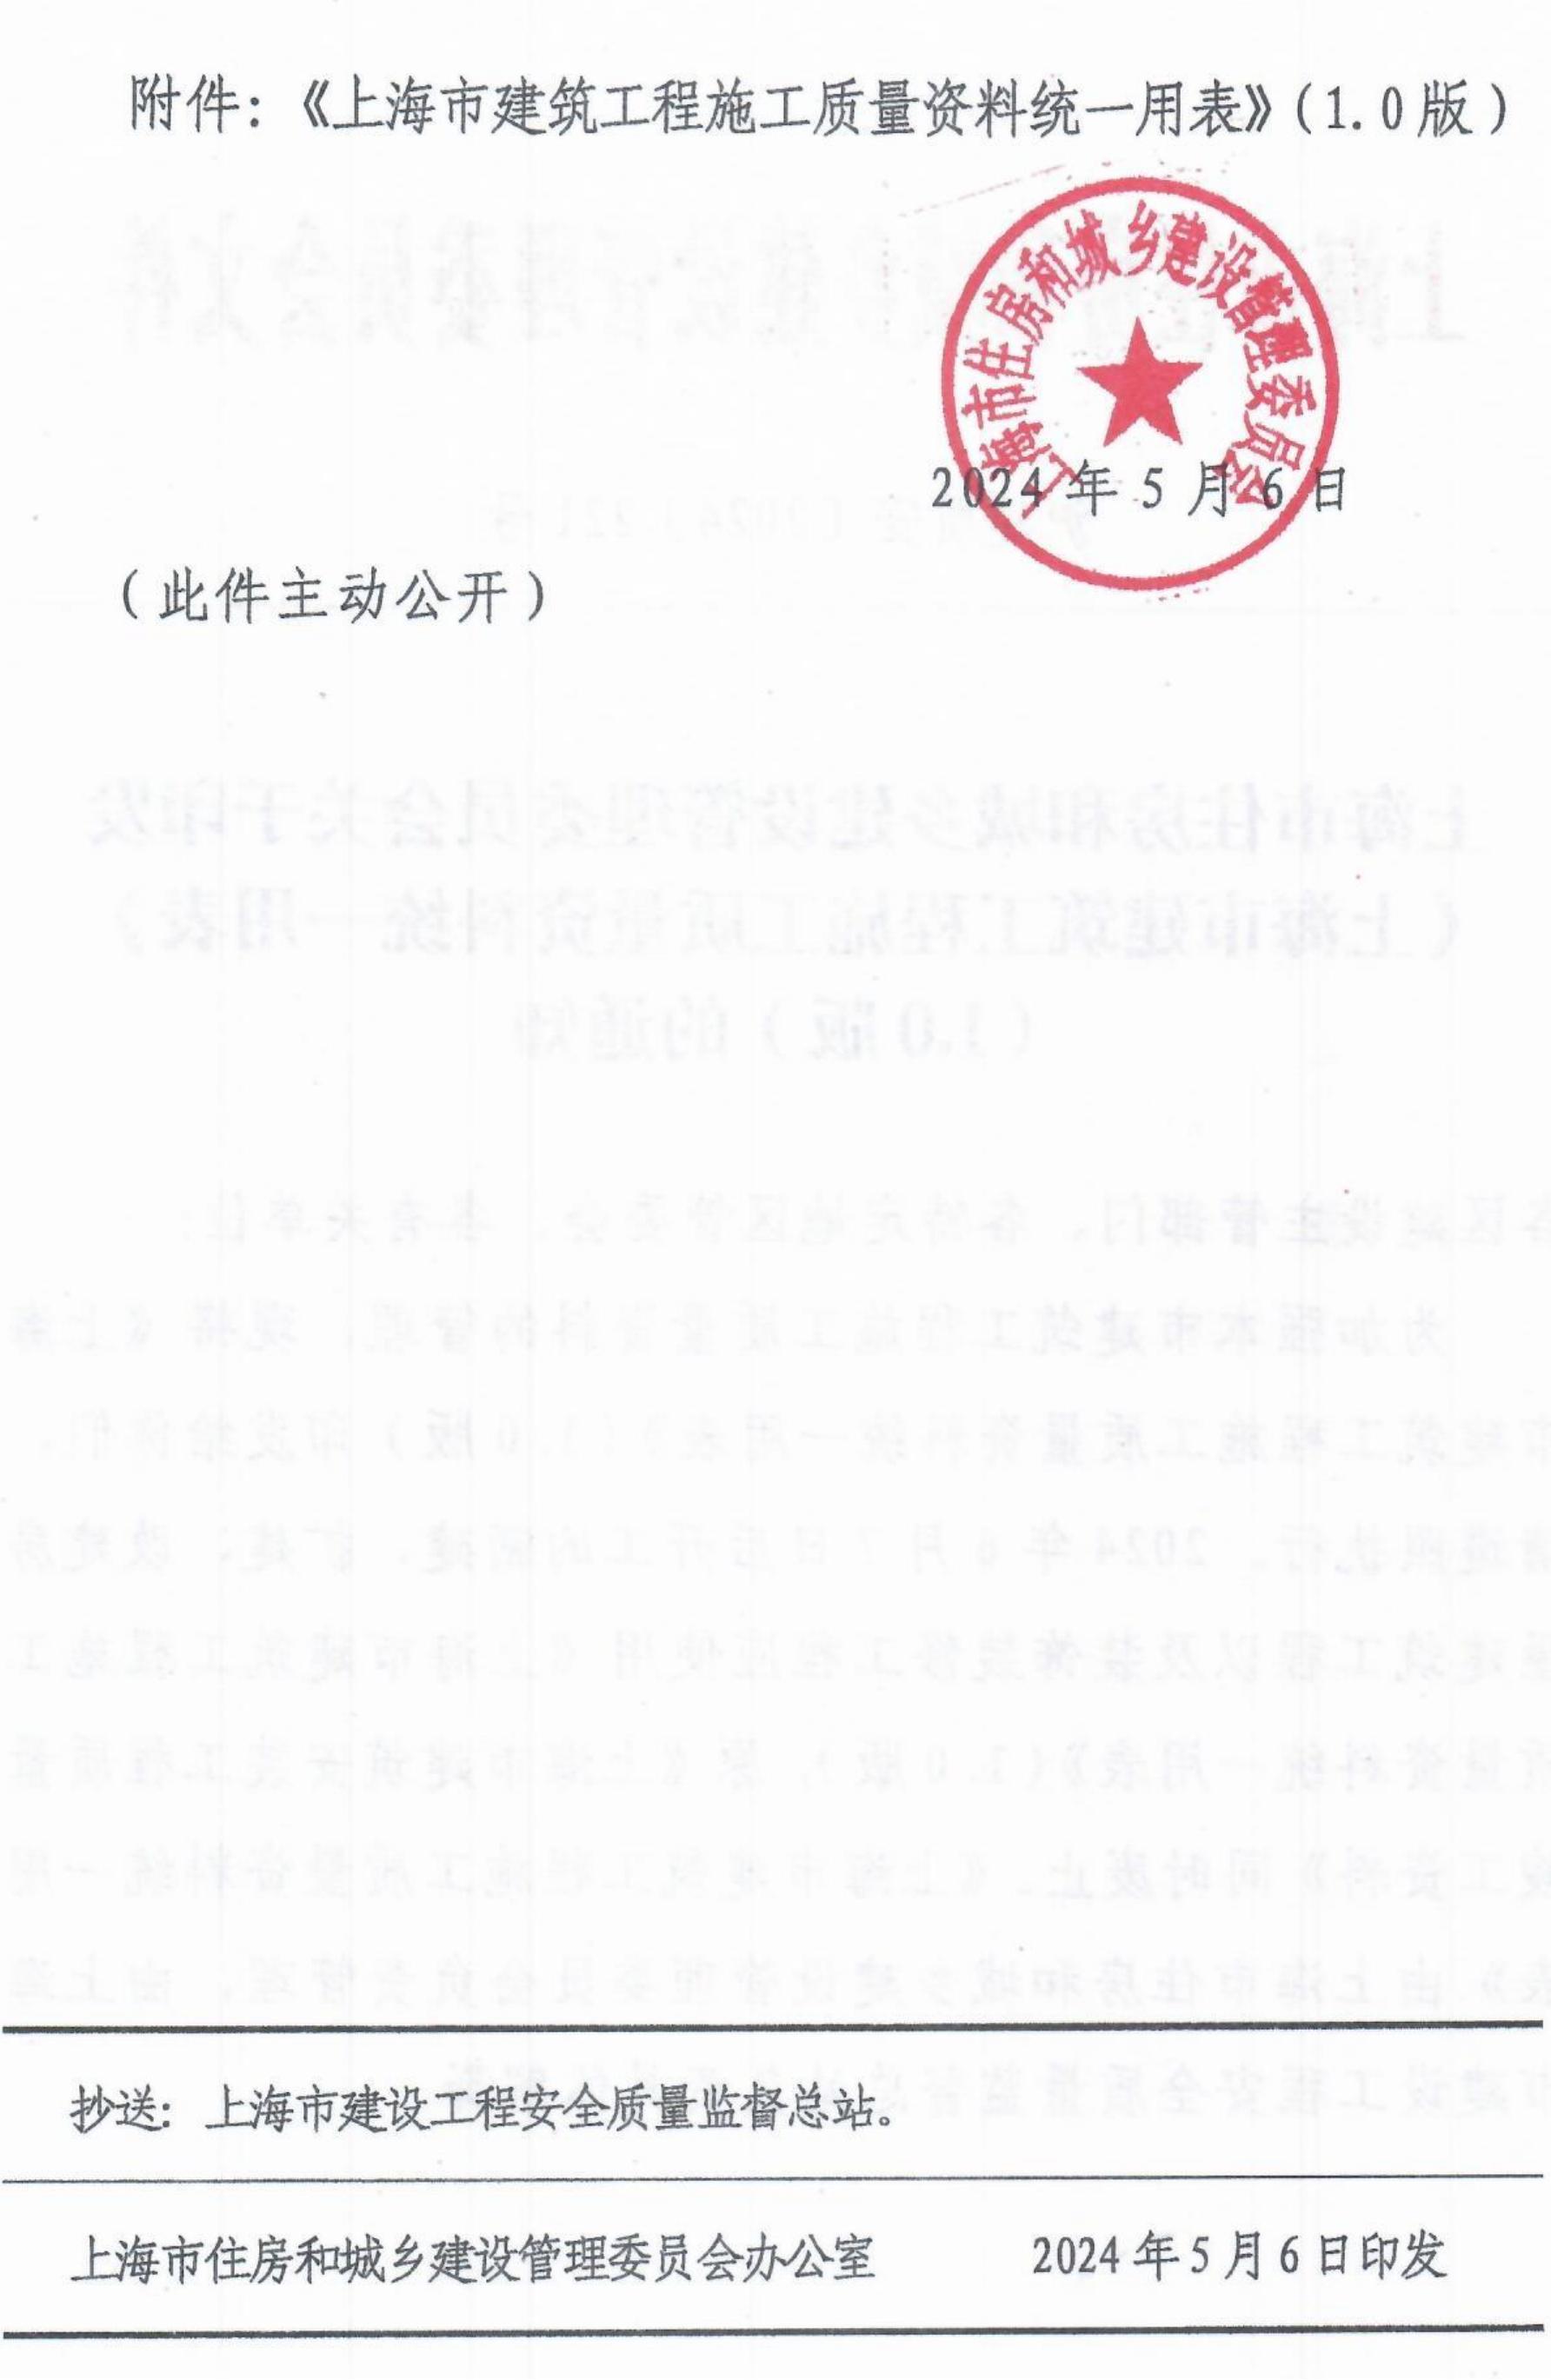 关于印发《上海市建筑工程施工质量资料统一用表》（1.0版）的通知_01.jpg